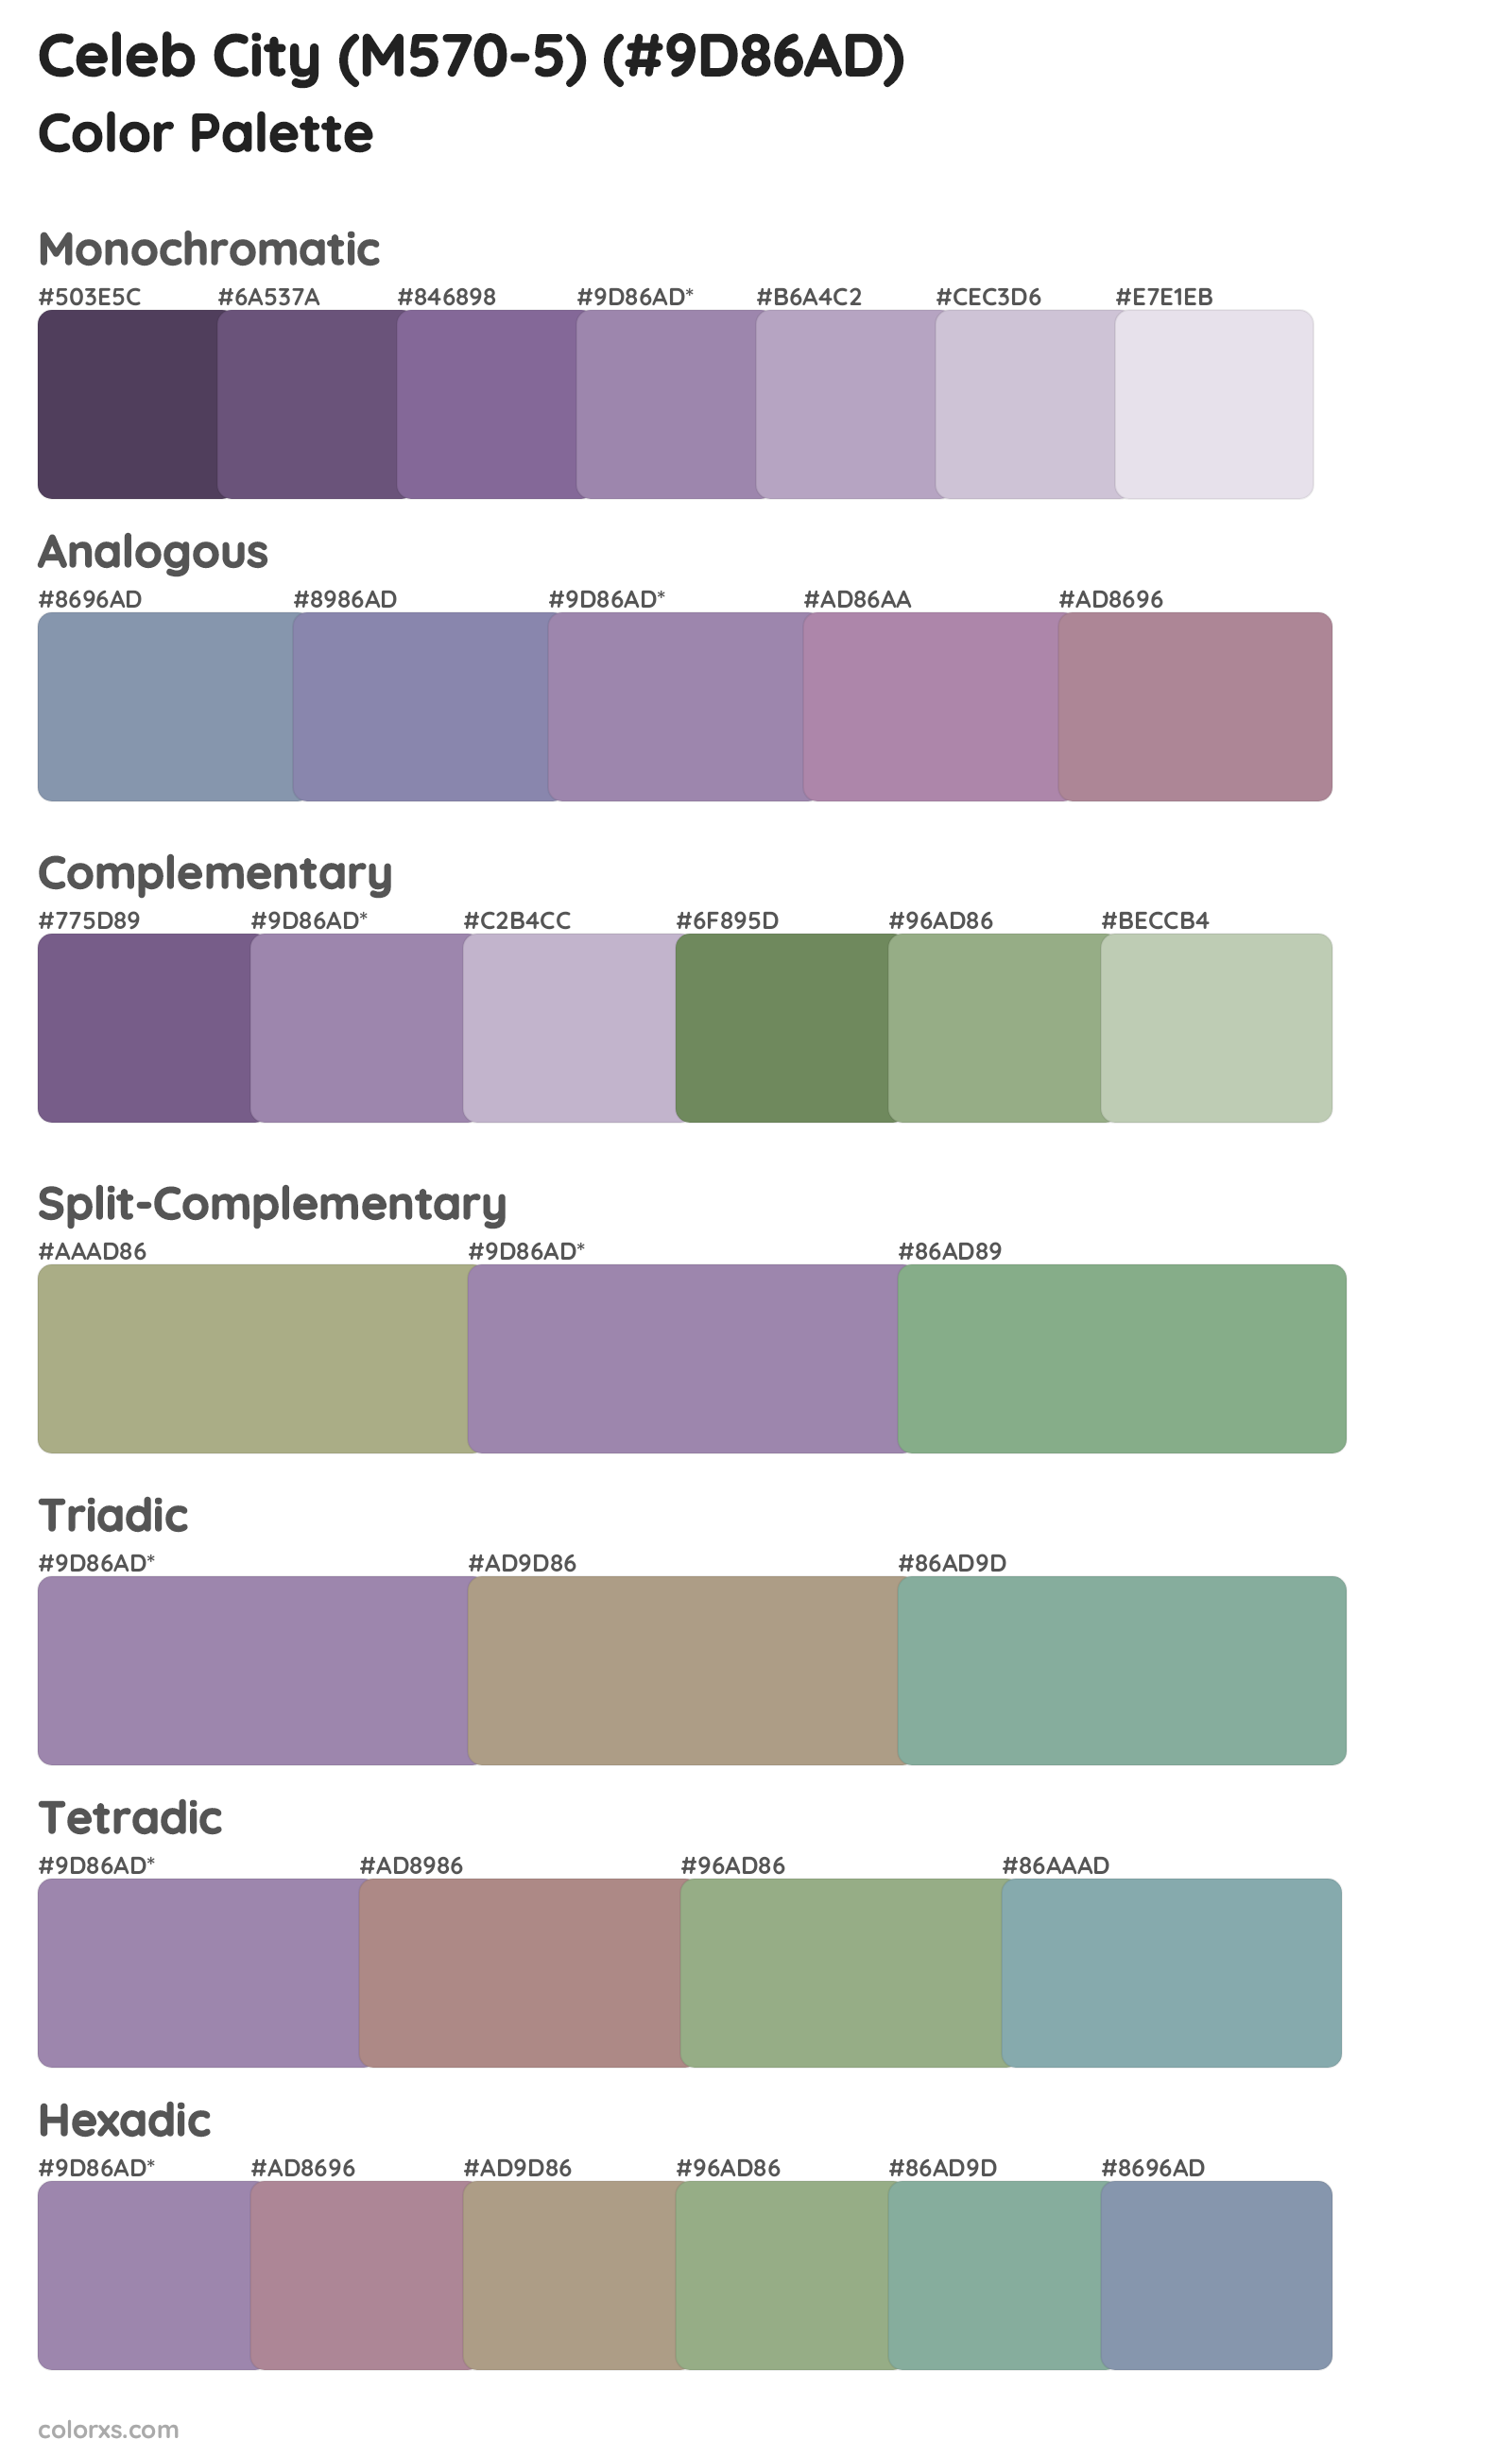 Celeb City (M570-5) Color Scheme Palettes